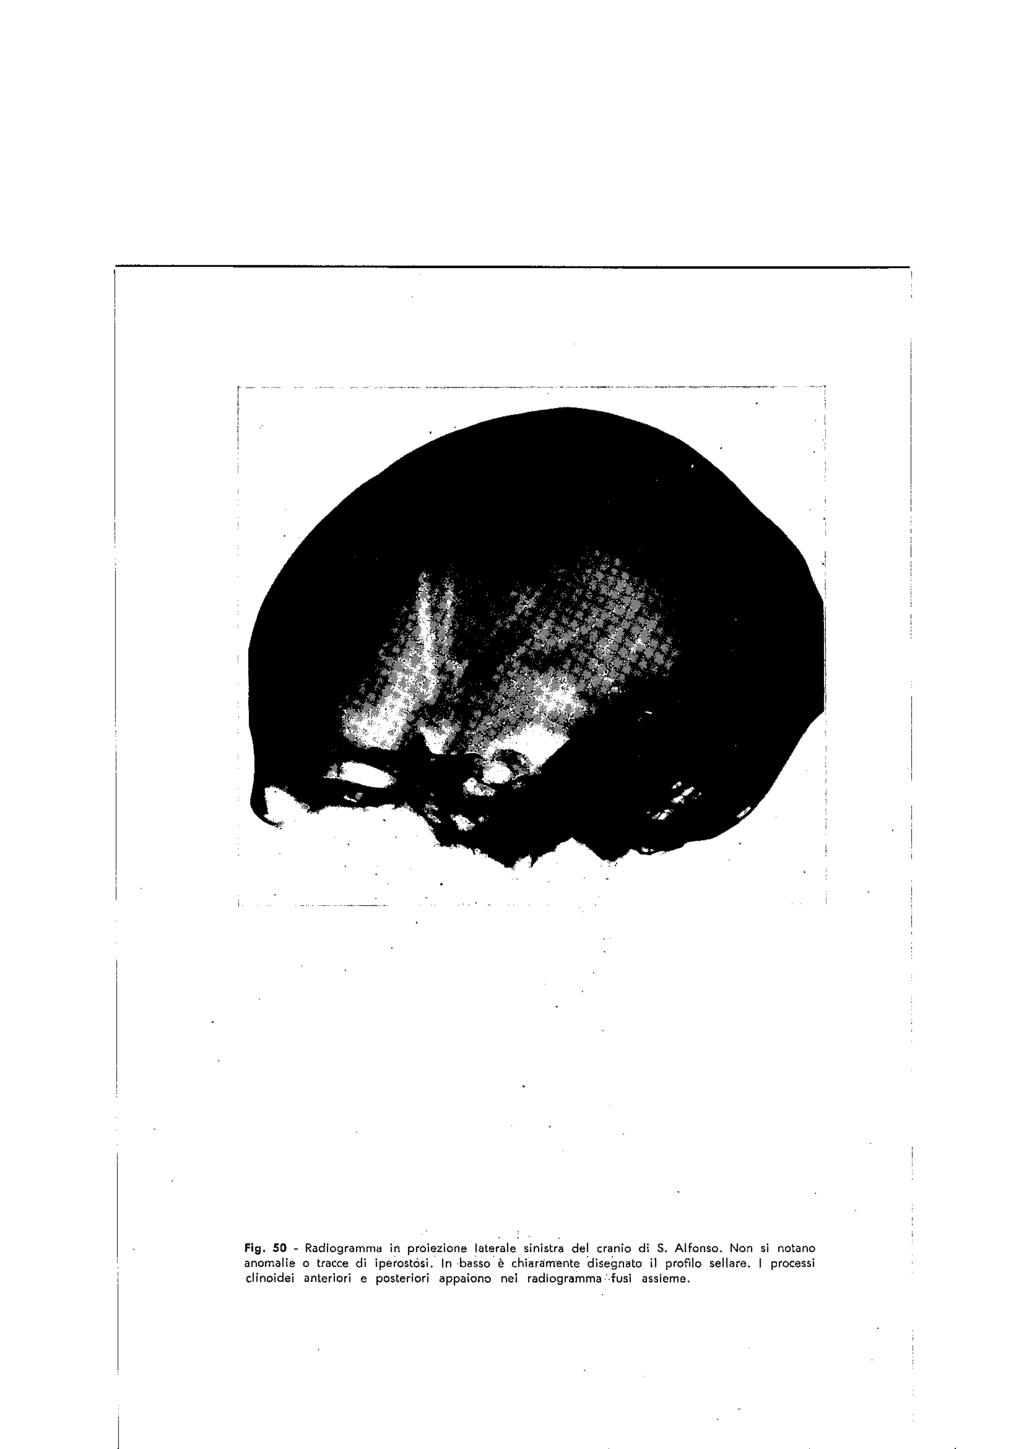 Fig. SO - Radiogramma in proiezione laterale sinistra del cranio di S. Alfonso. Non si notano anomalie o tracce di lpèrostoal.